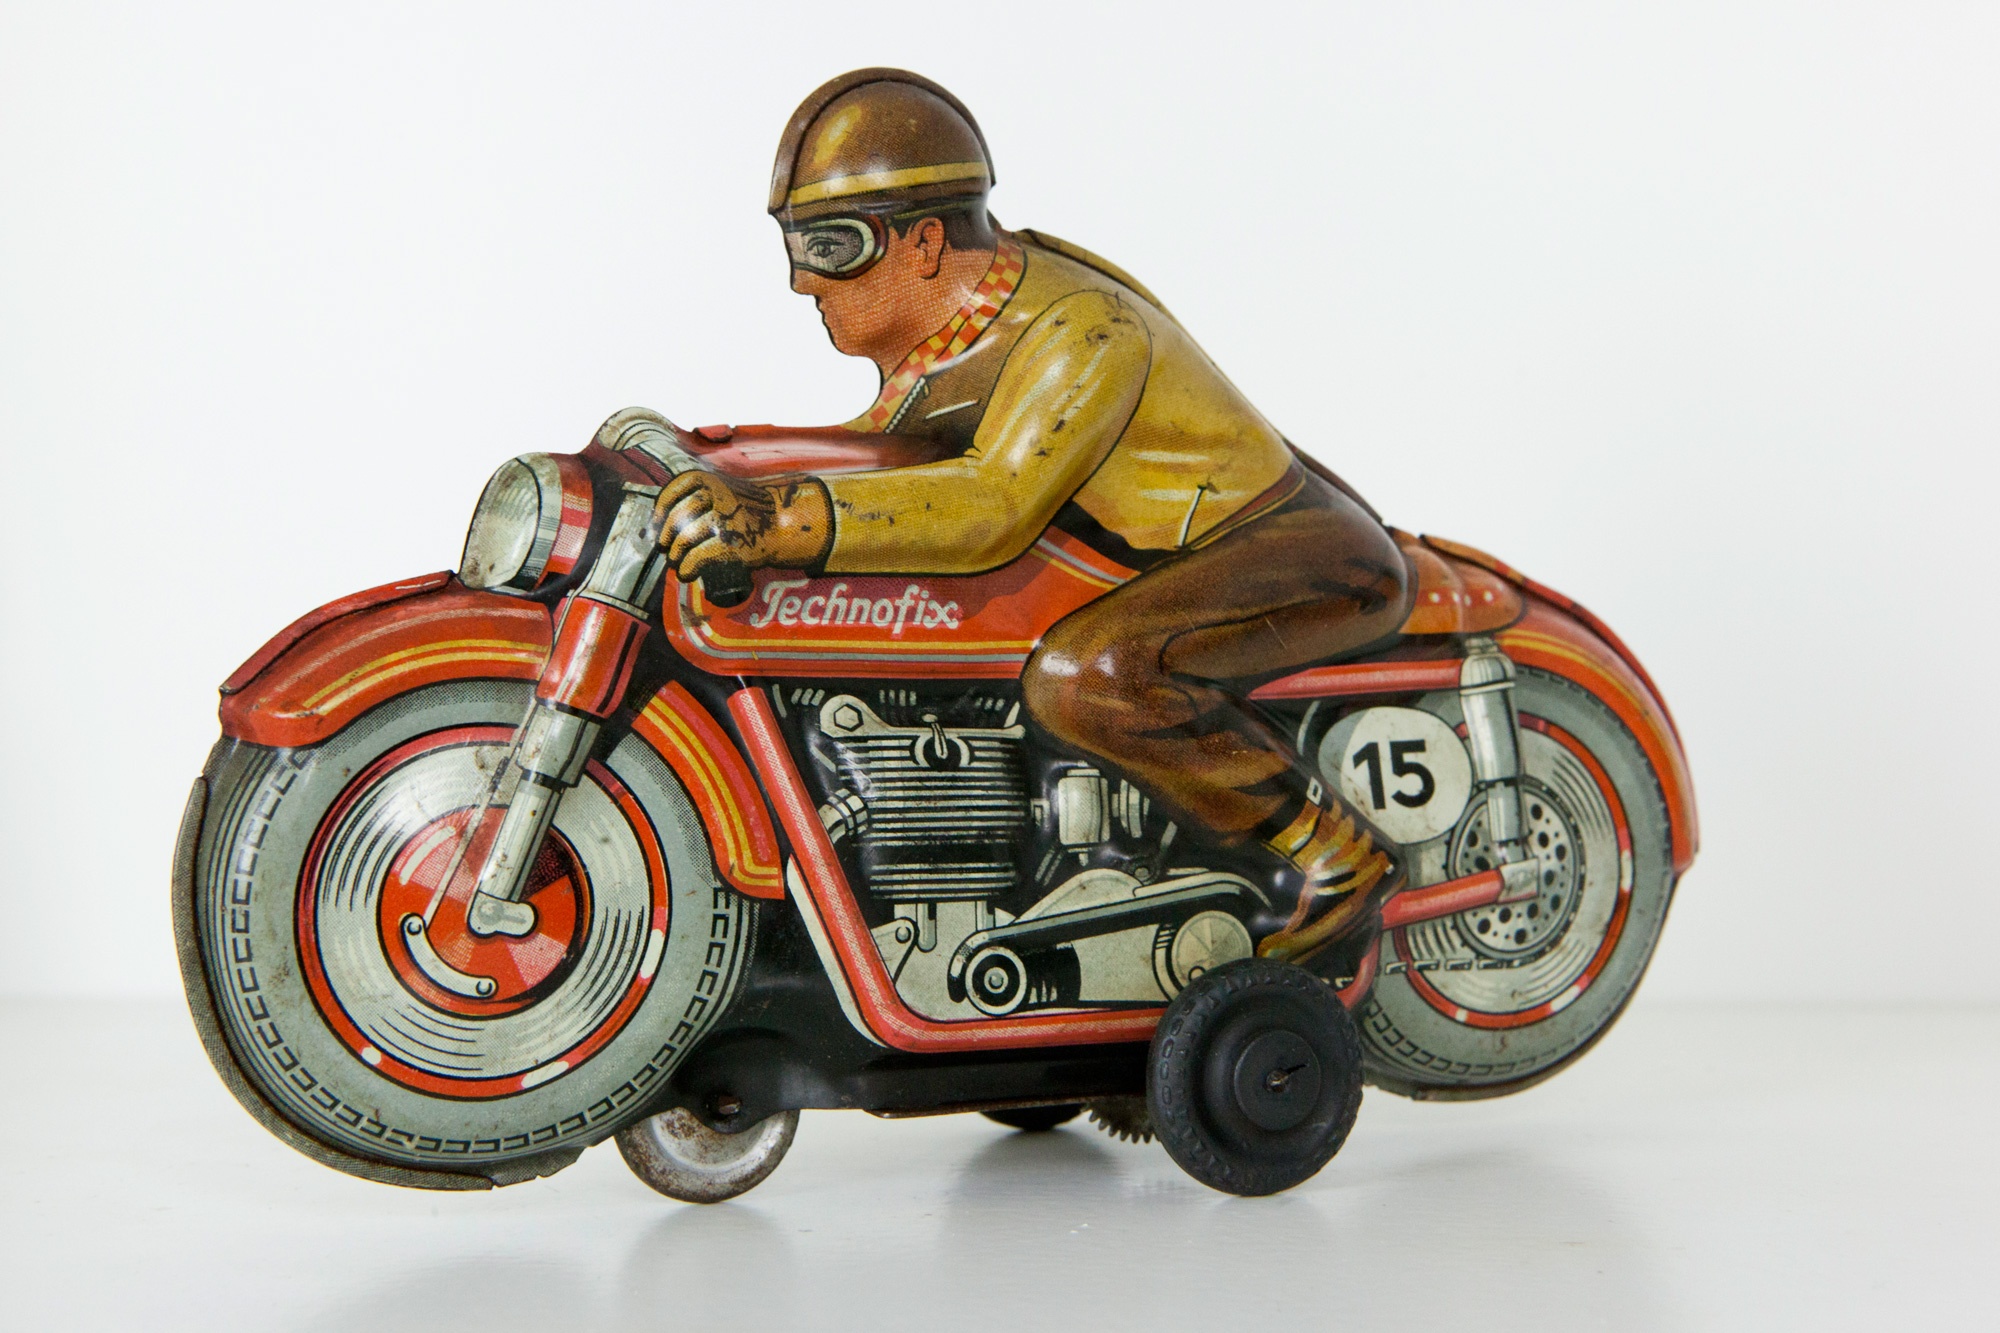 Motorrad Technofix (Das Kleine Museum - Spielzeug aus zwei Jahrhunderten CC BY)